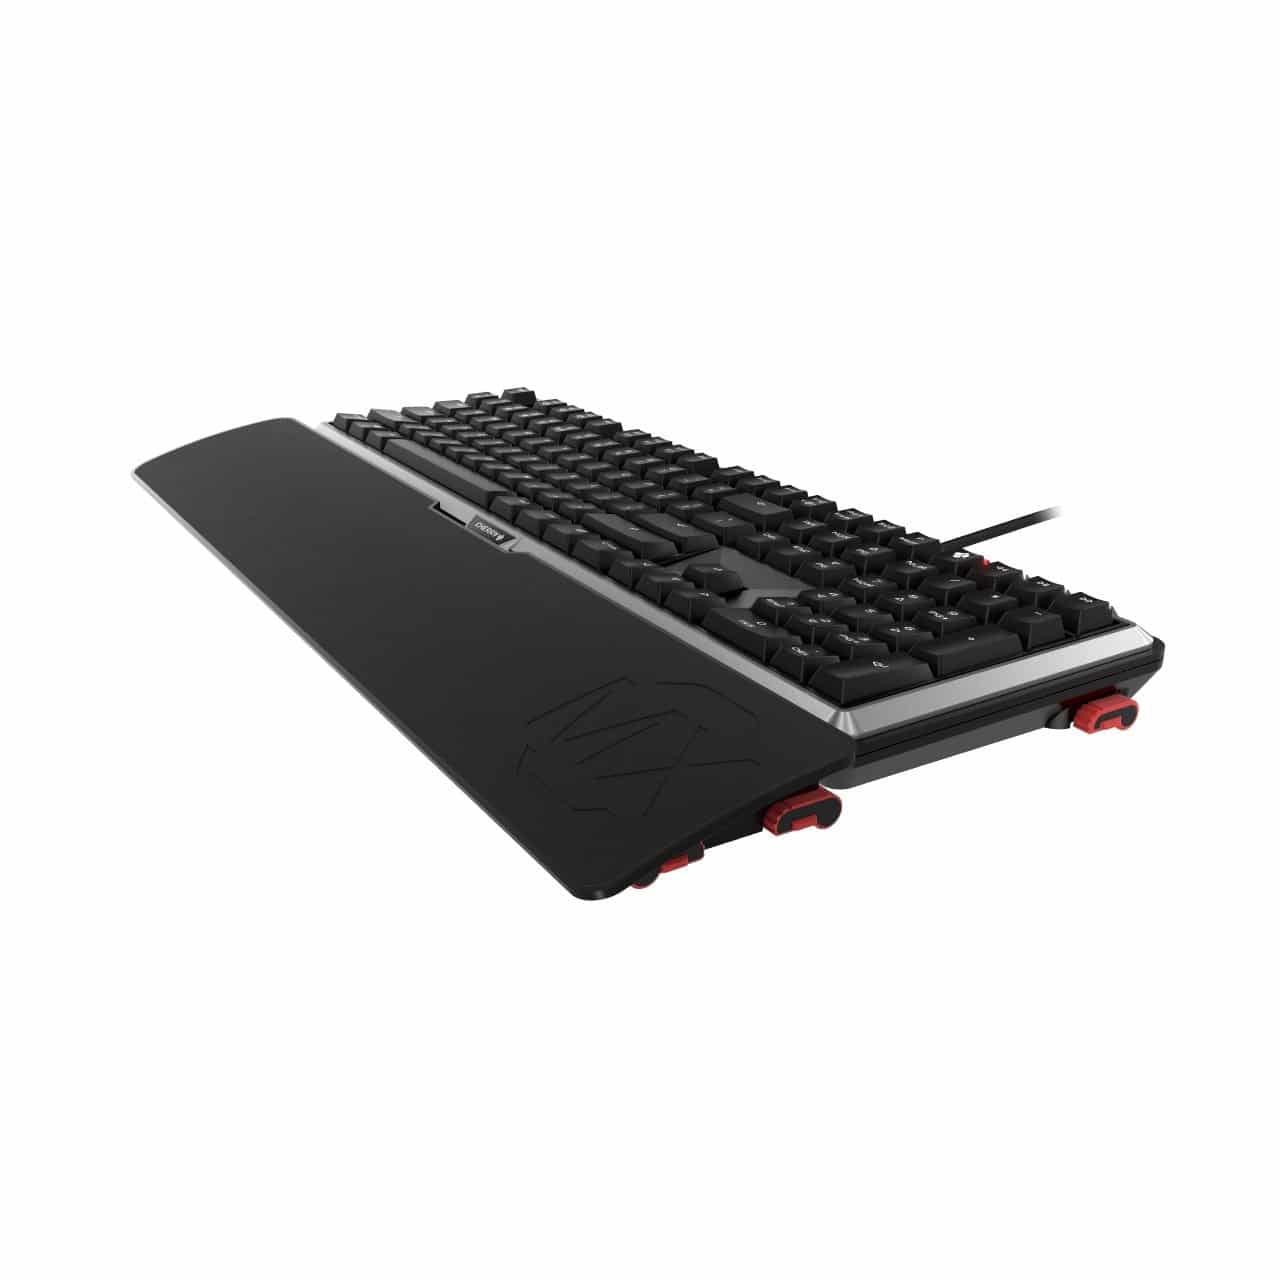 Image 16 : Cherry MX Board 5.0 : clavier mécanique silencieux et ergonomique pour gamers